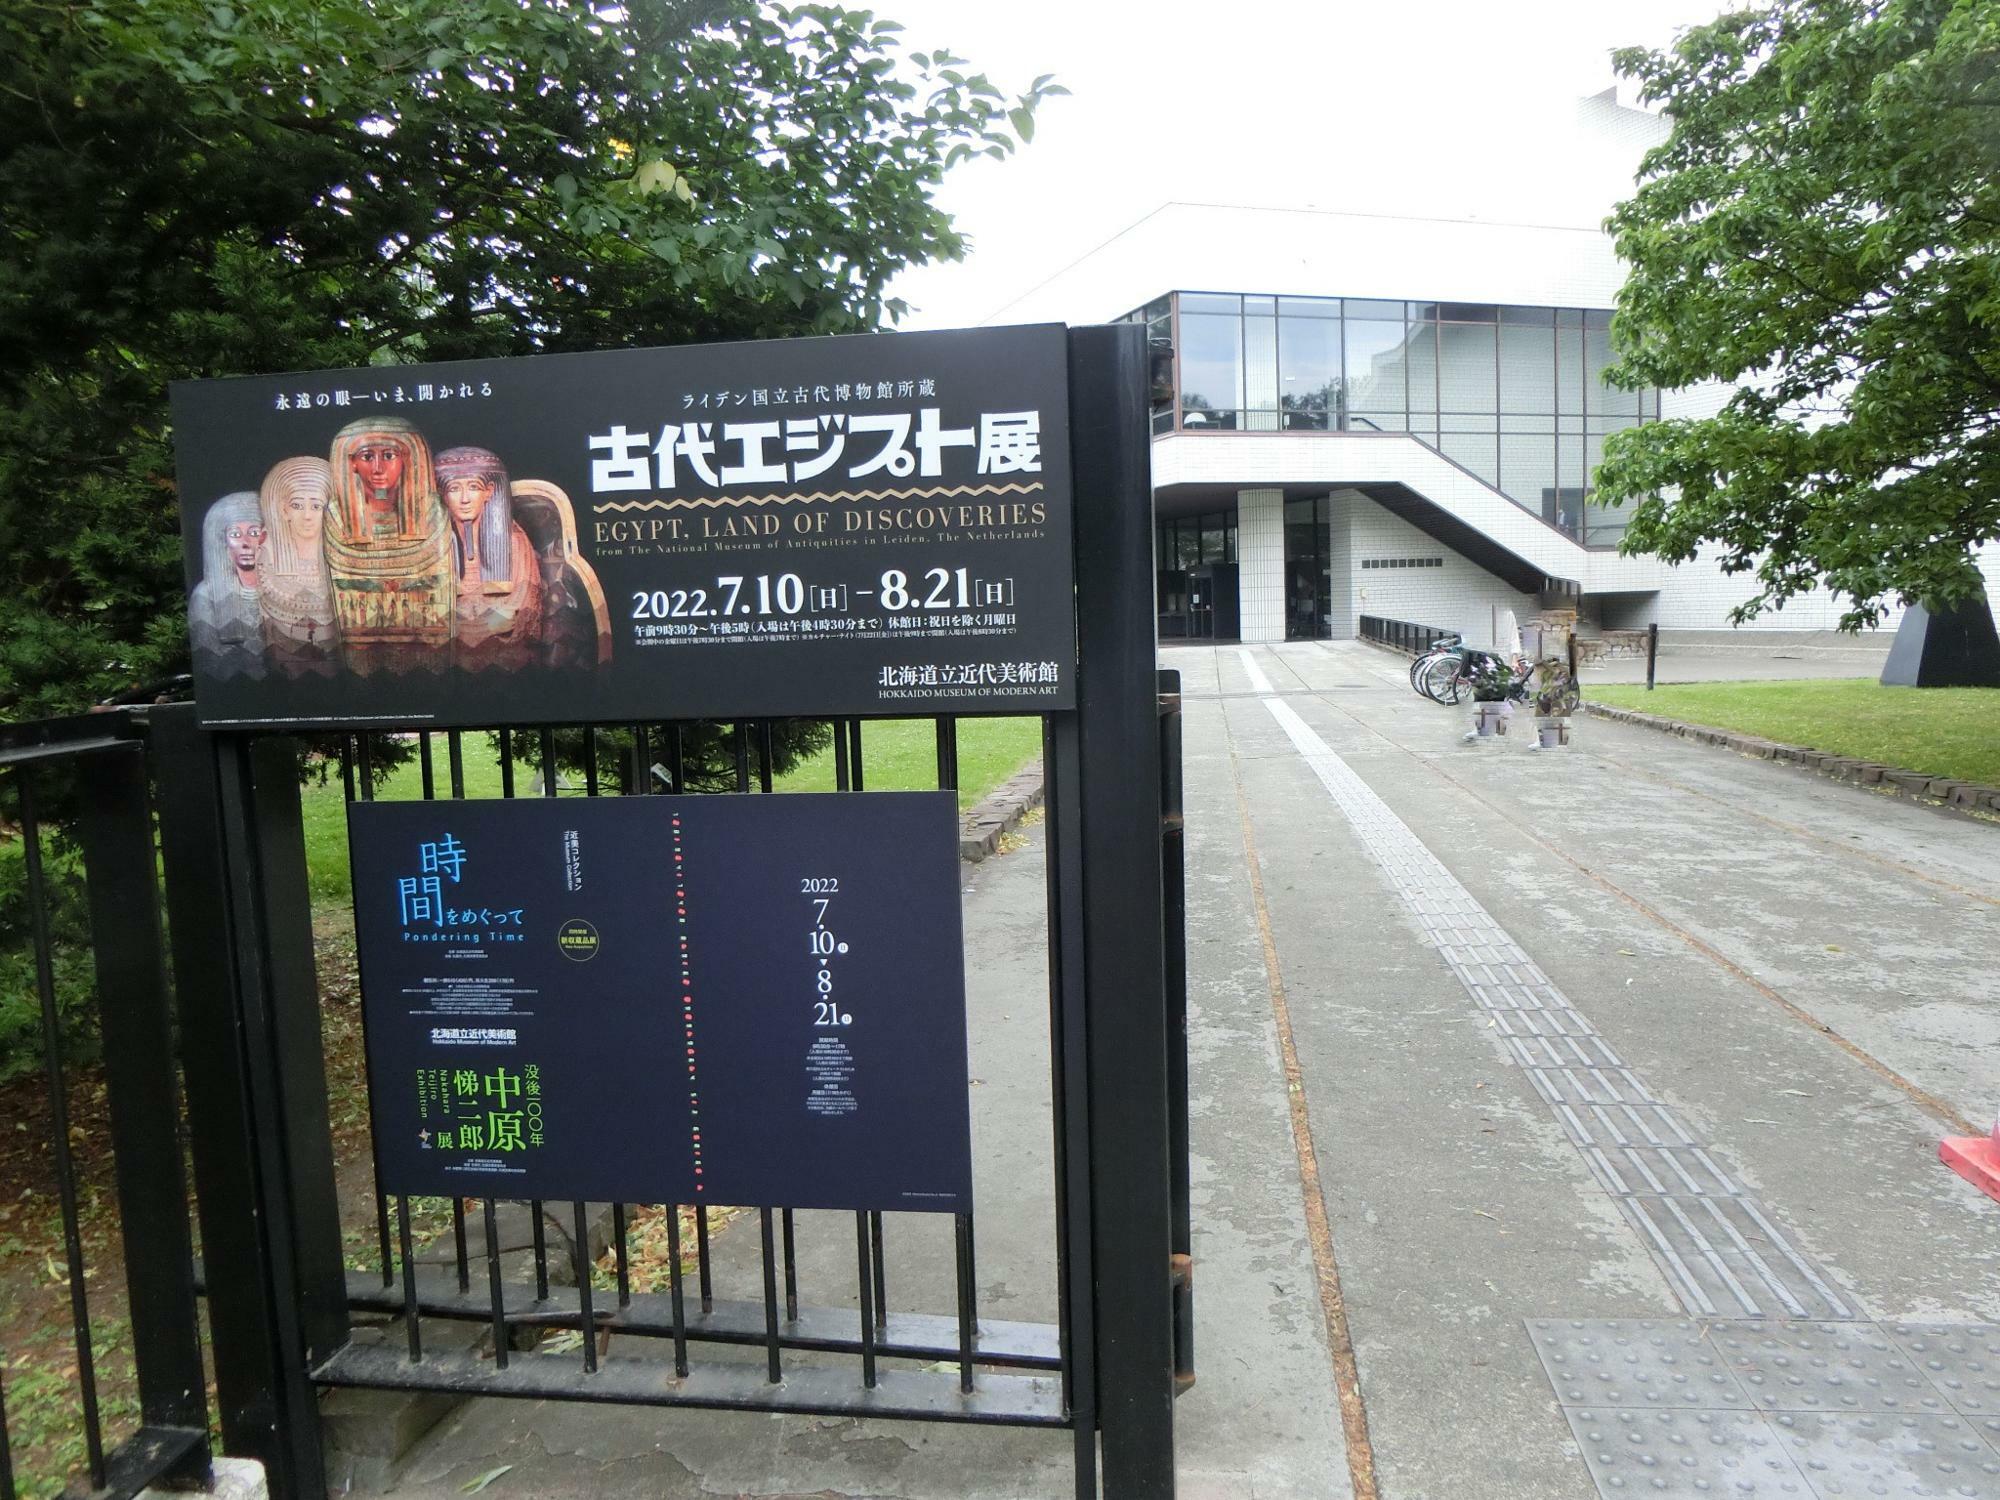 北海道立近代美術館は出入り口が2箇所ありますが、地下鉄と提携駐車場からは西１７丁目通側出入り口が1番近いです。